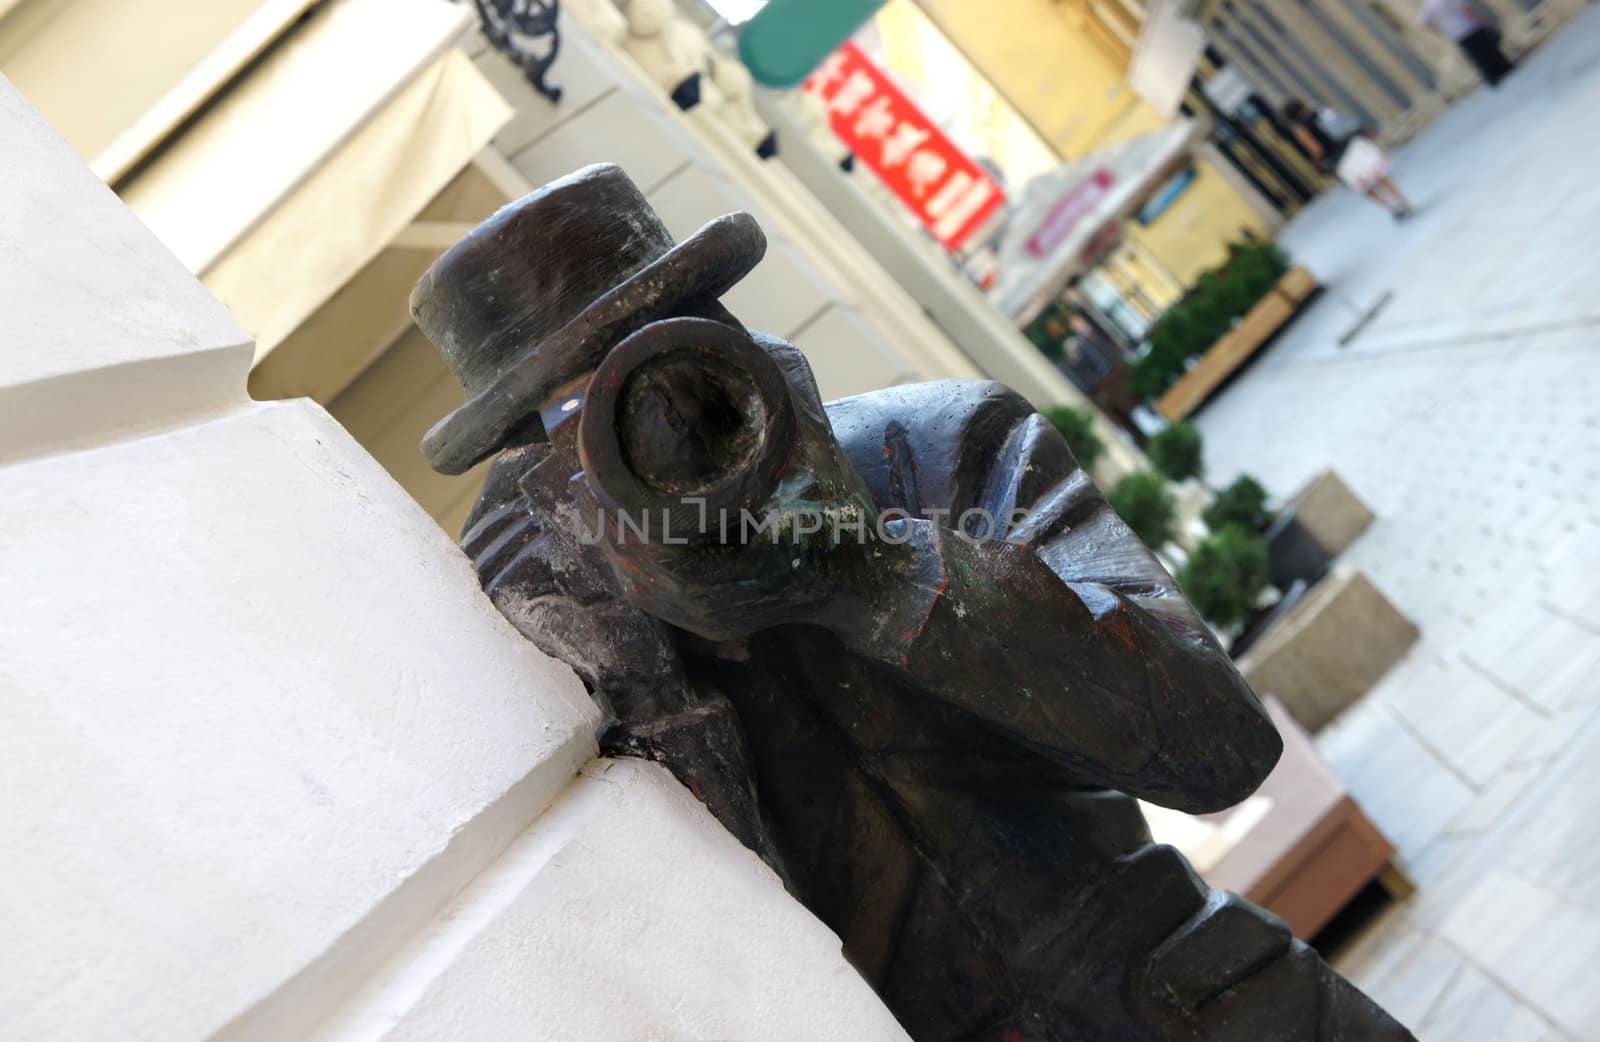 Sculpture Paparazzi in Old Town, Bratislava, Slovakia